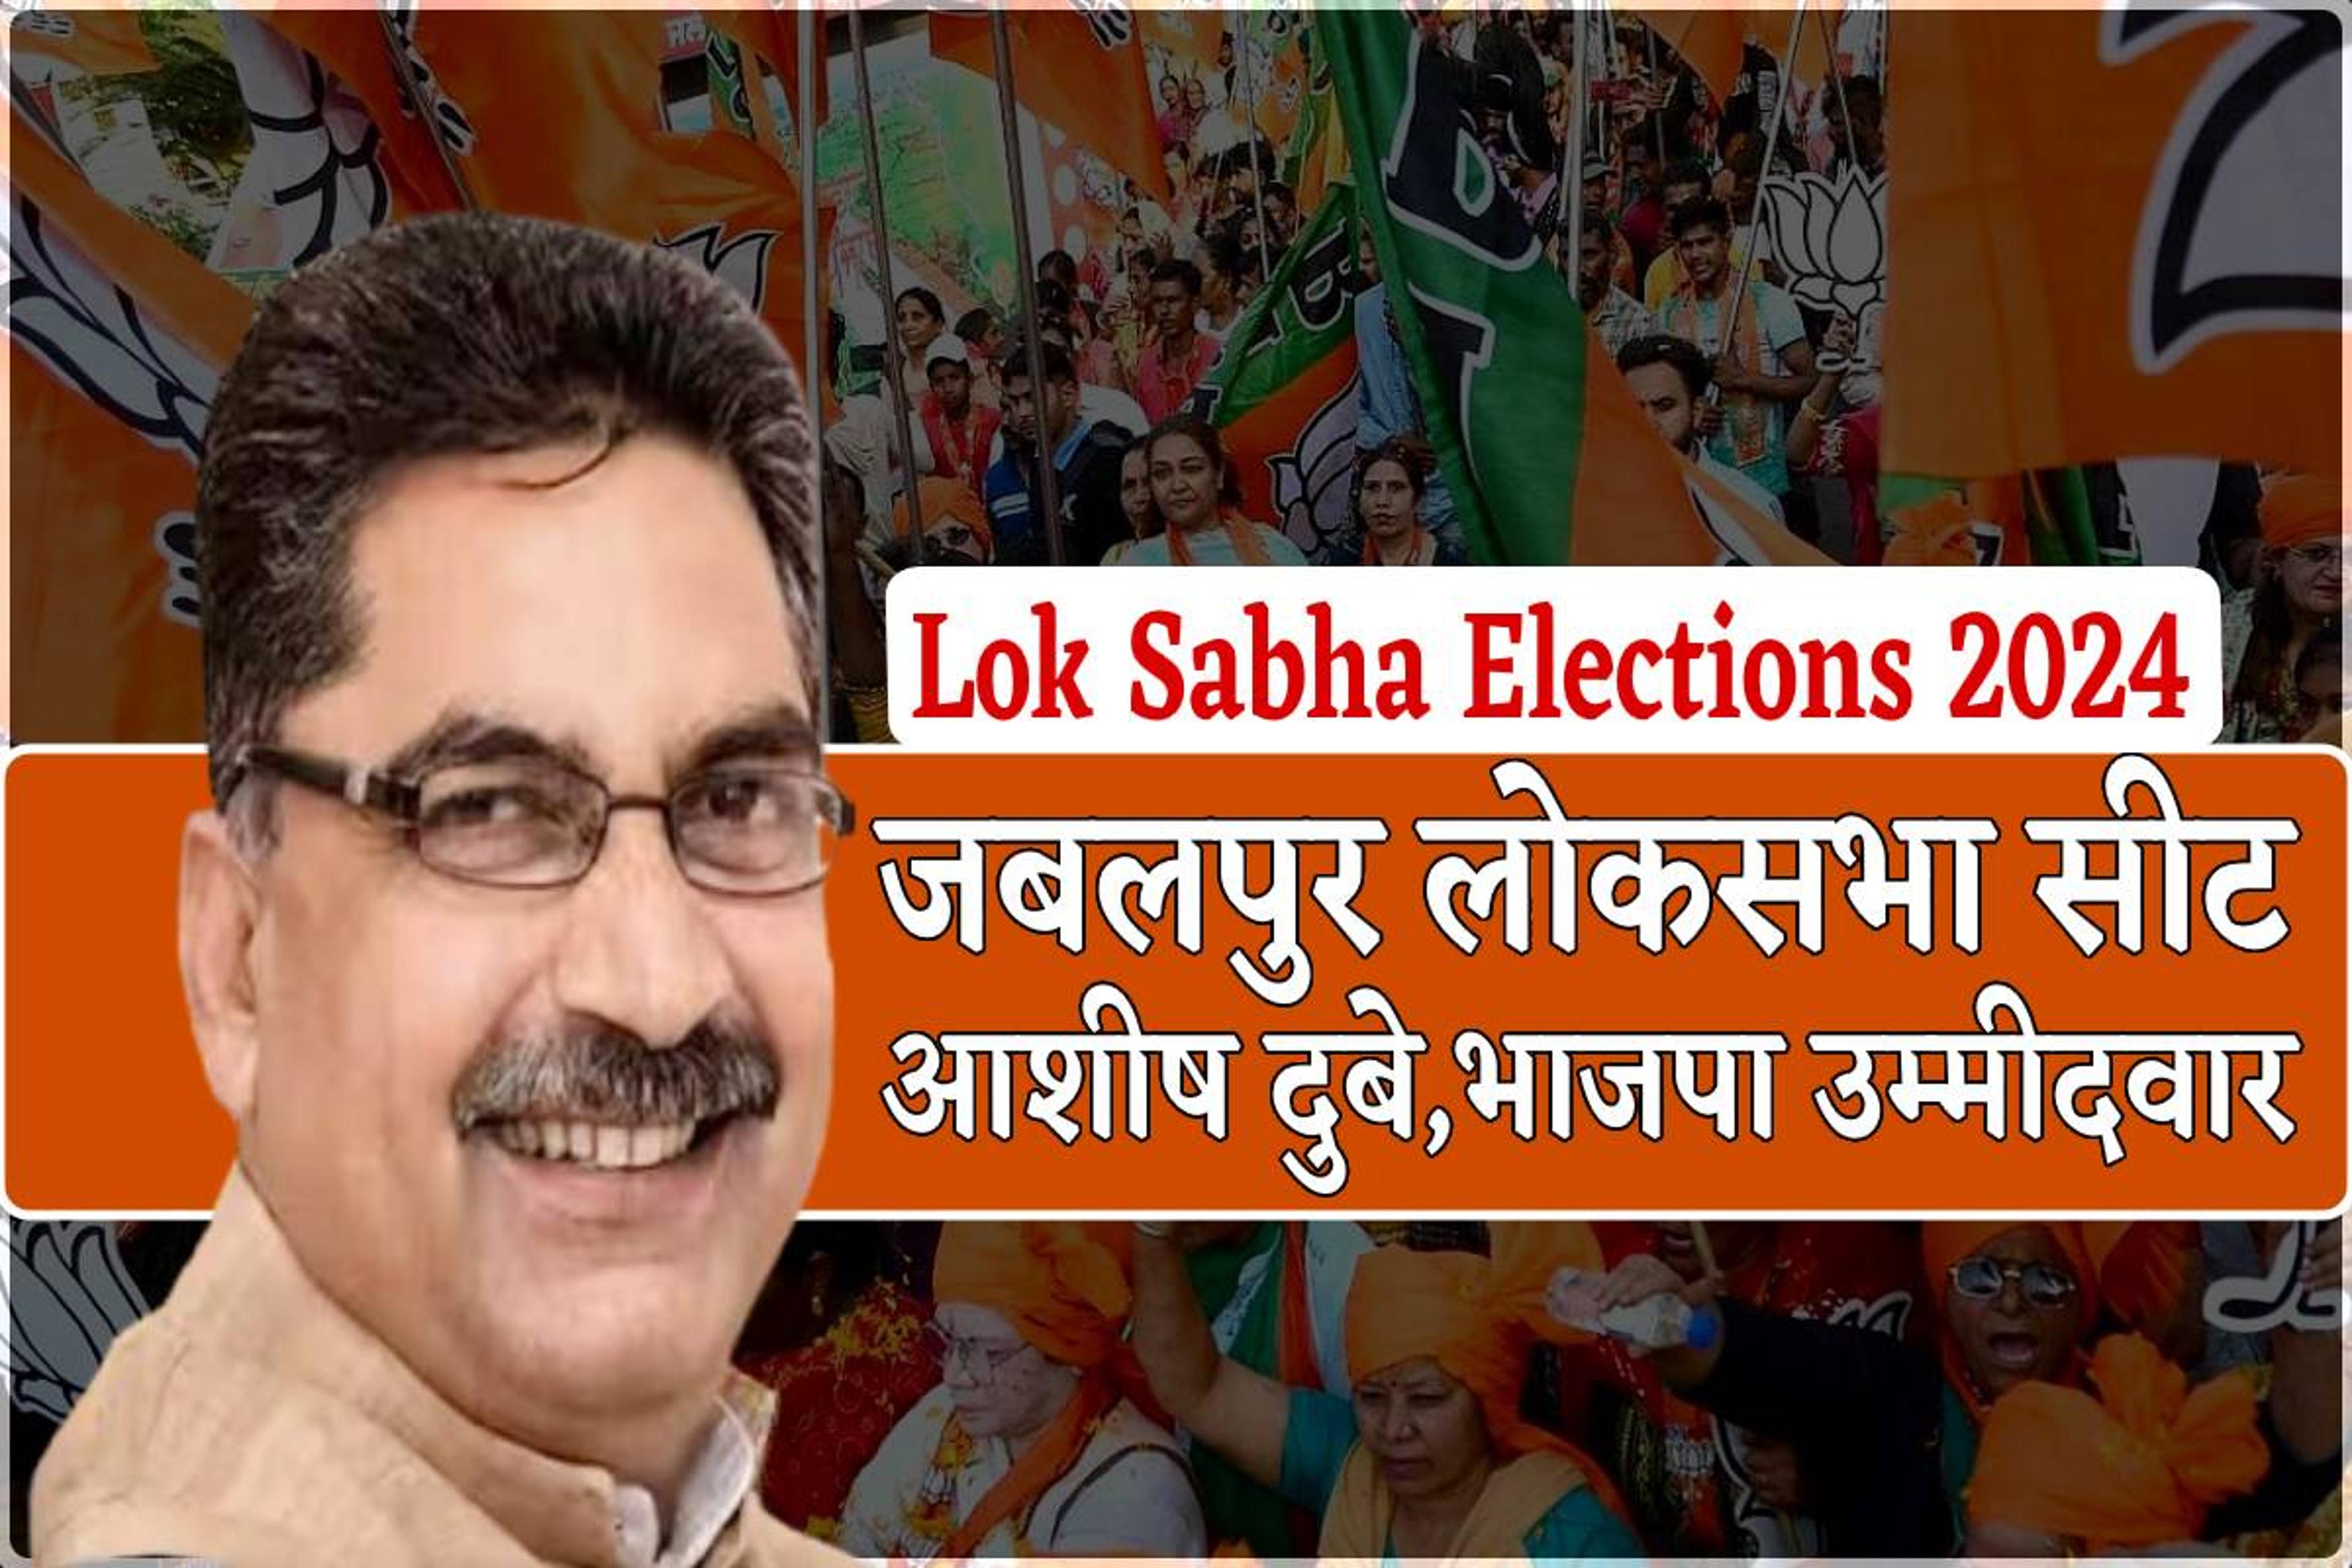 Lok Sabha Elections 2024: जबलपुर सीट से BJP ने आशीष दुबे को बनाया उम्मीदवार, जानिए कौन हैं?